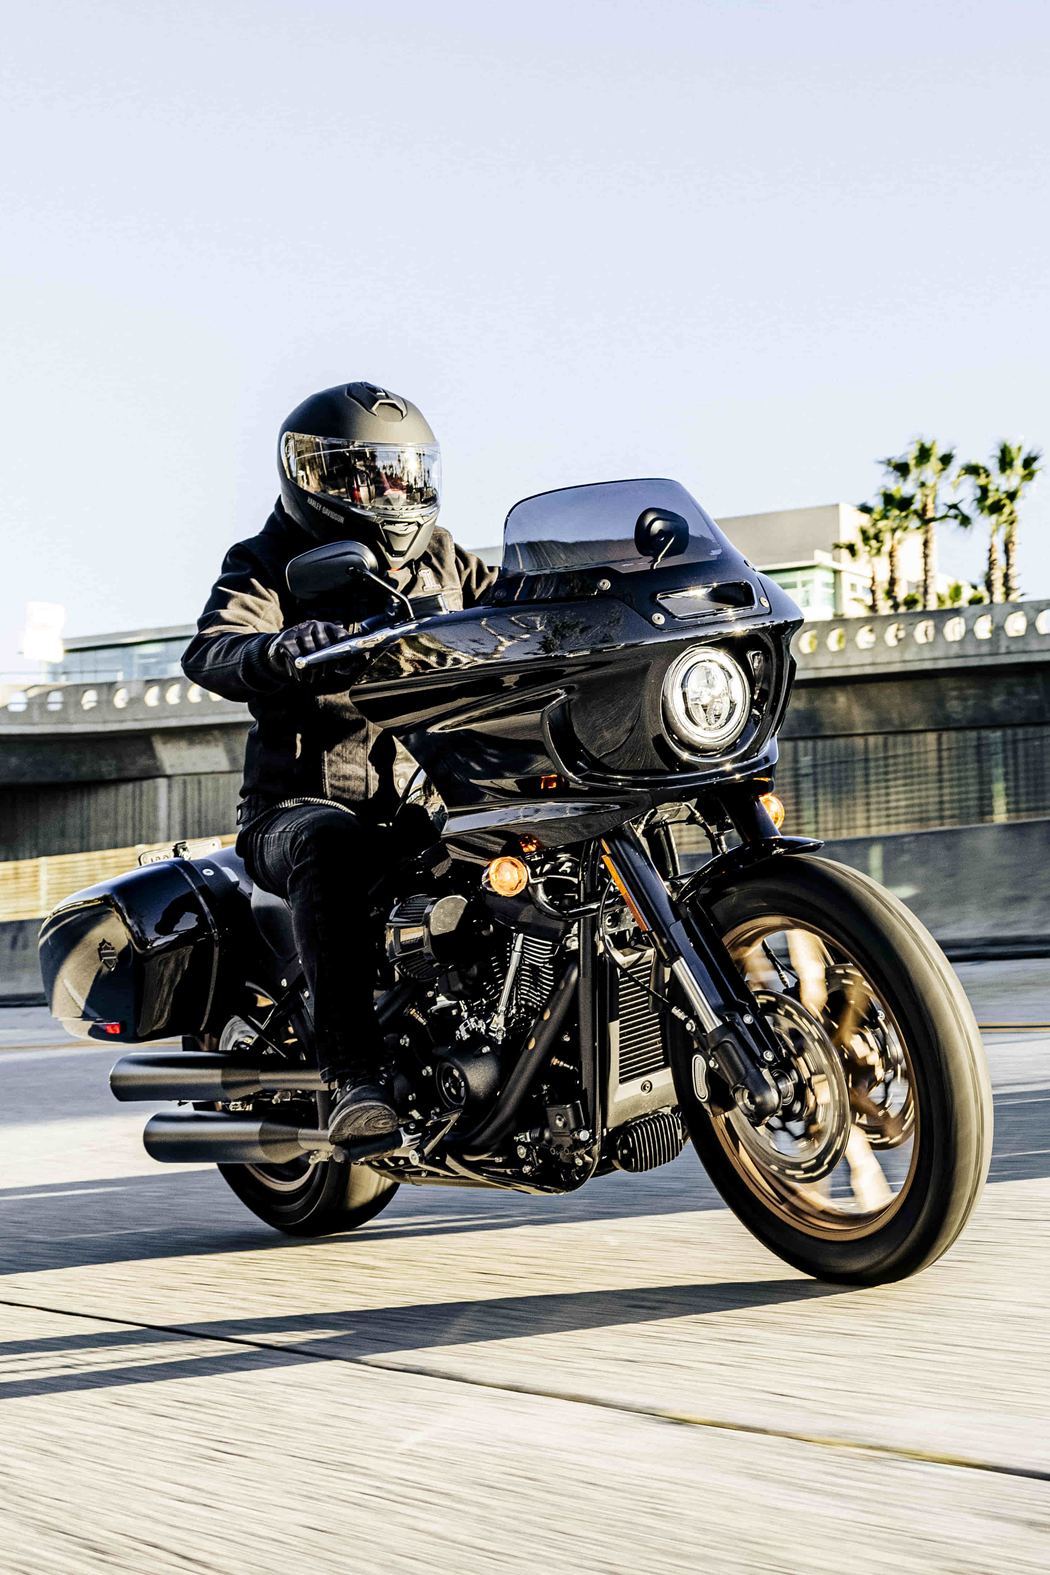 Harley-Davidson- Uma Paixão Sem Medida - Ajustes Em Peças Da Harley